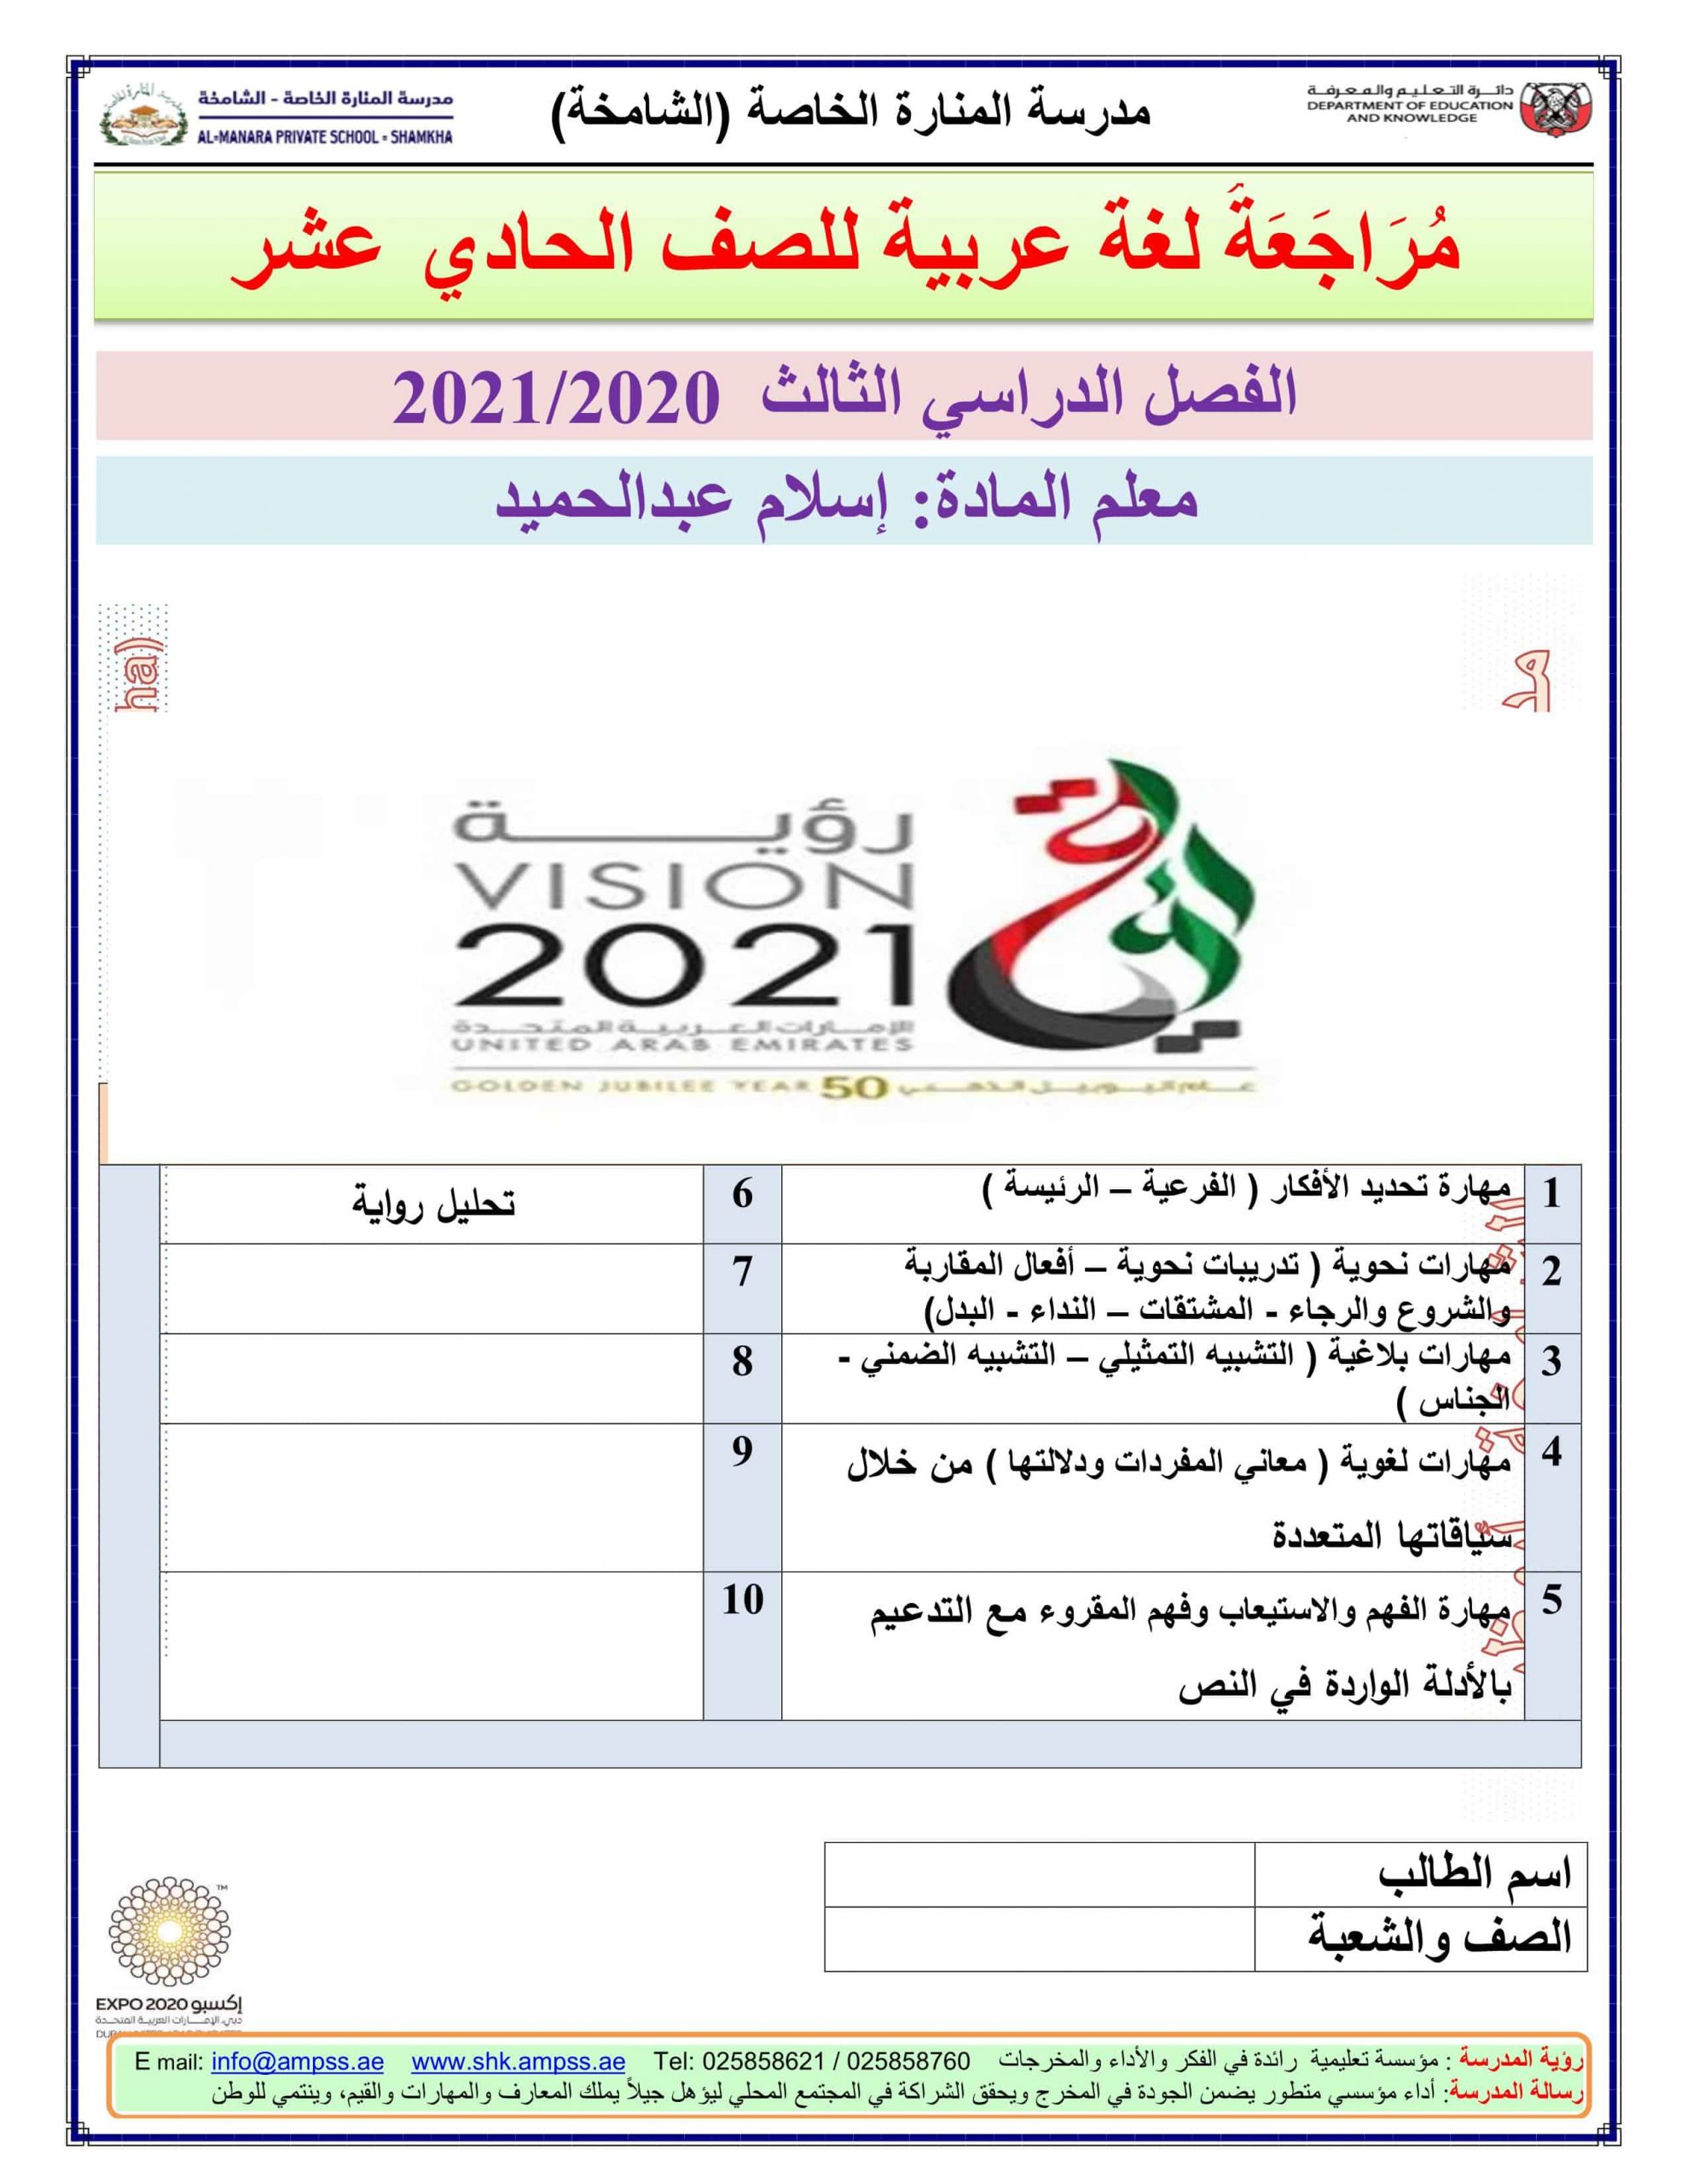 أوراق عمل مراجعة شاملة الفصل الدراسي الثالث الصف الحادي عشر مادة اللغة العربية